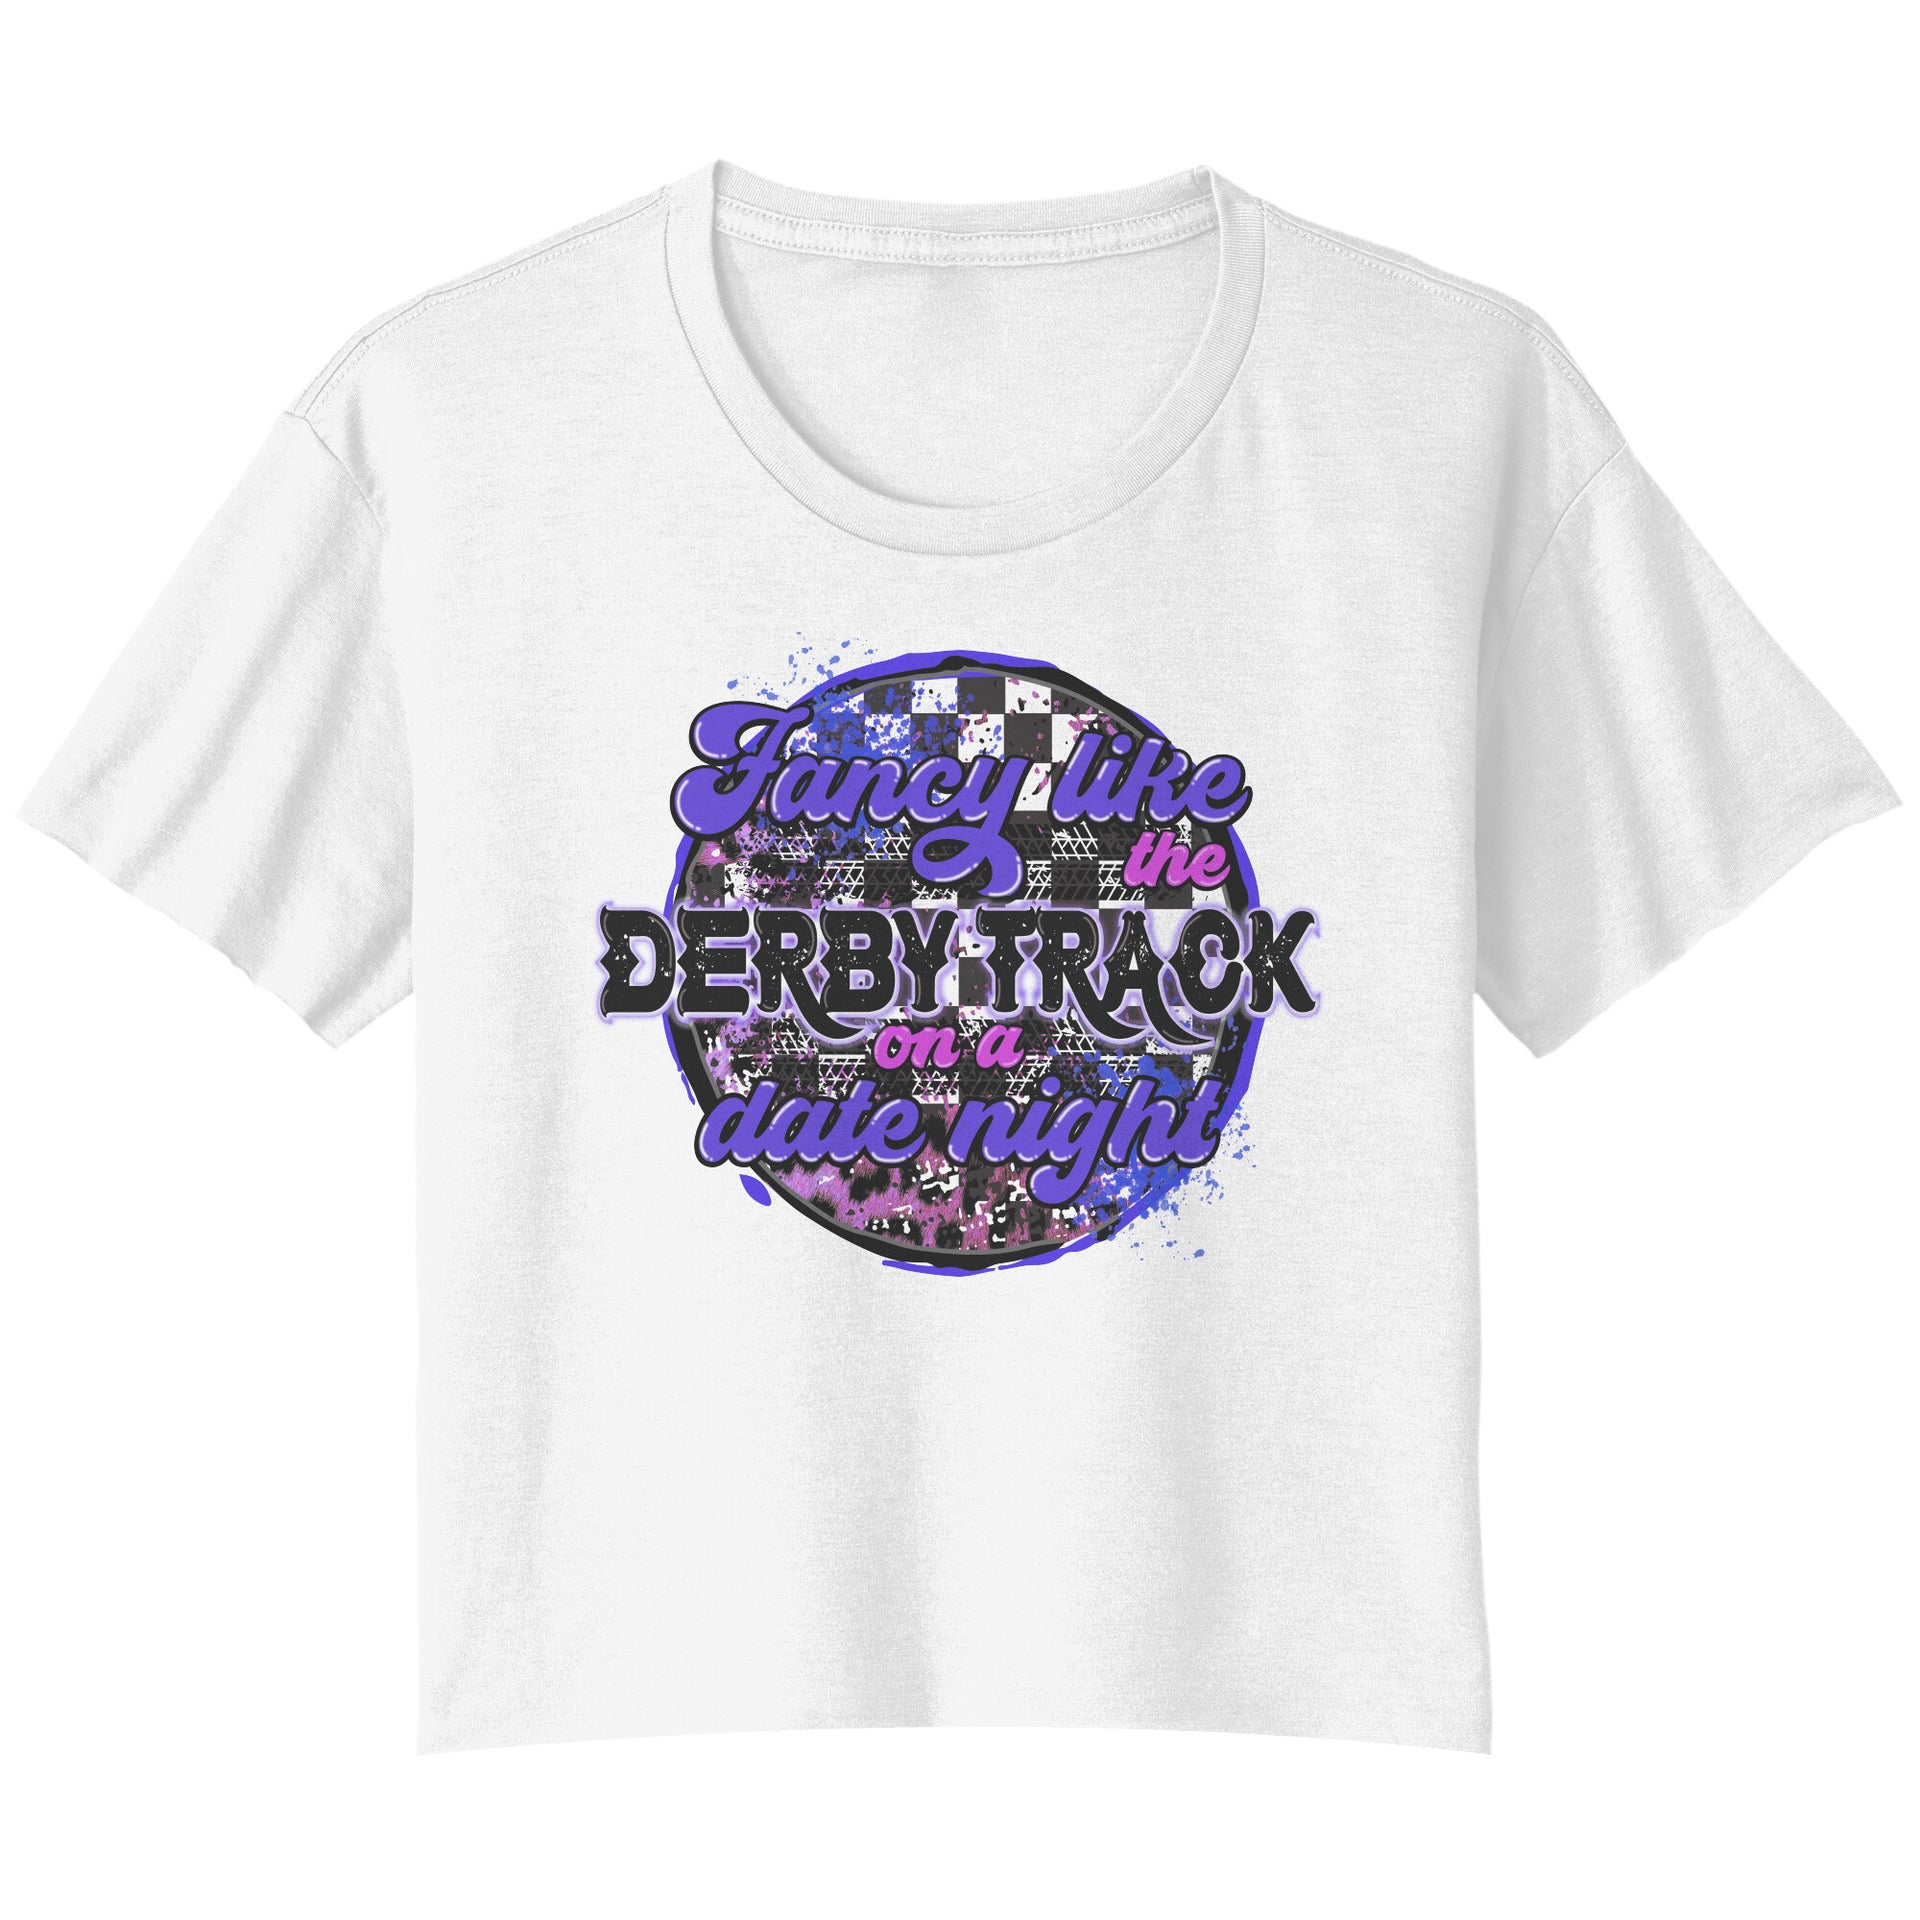 Demolition Derby T-shirts